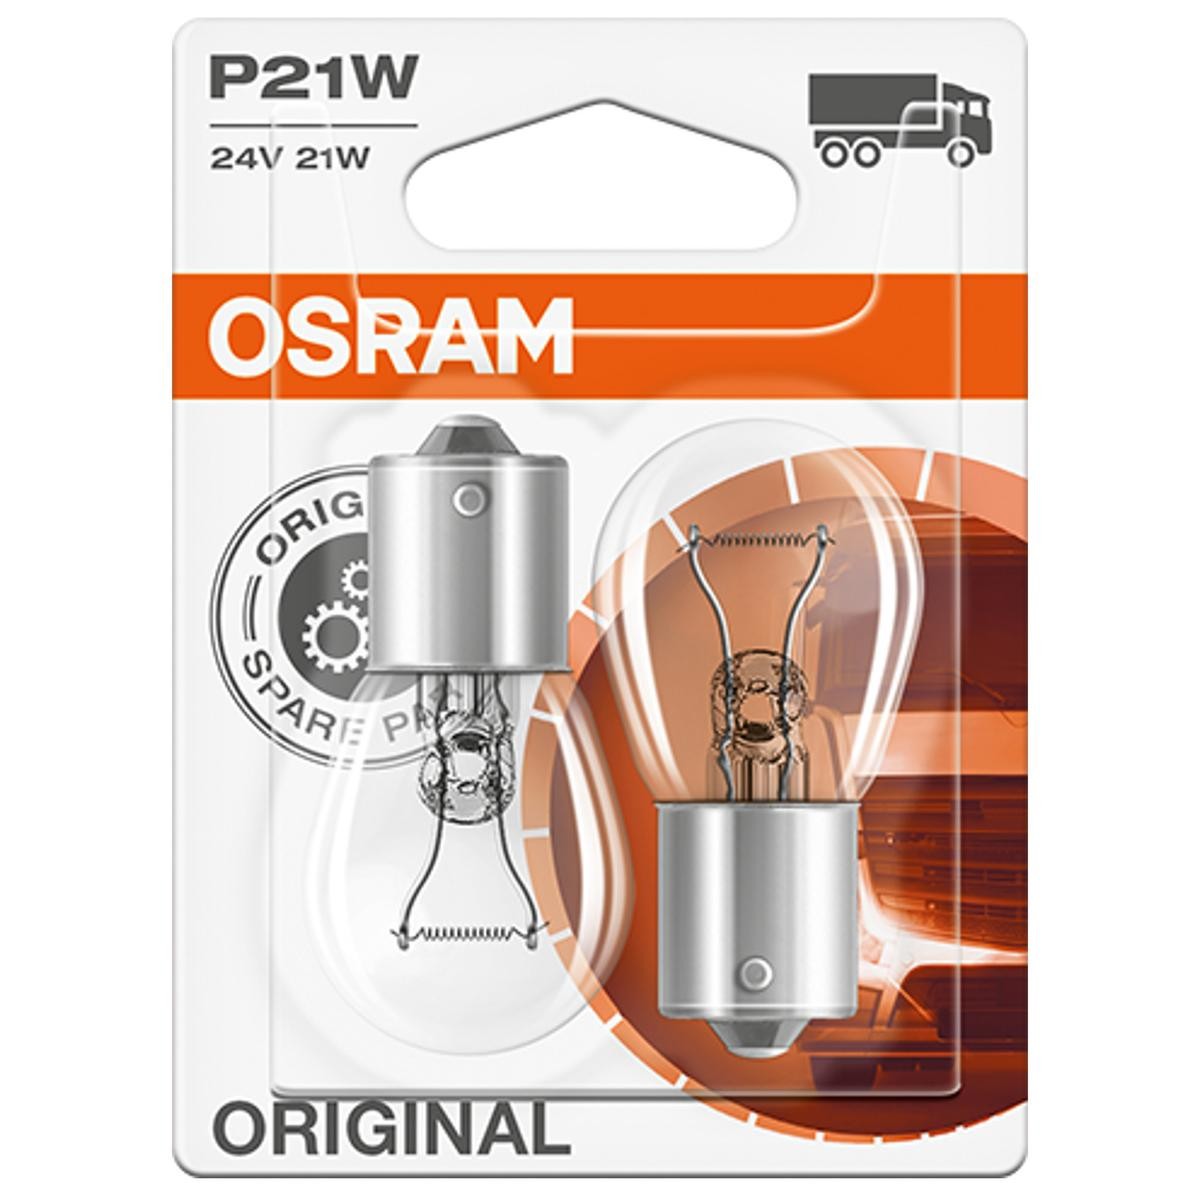 P21W OSRAM ORIGINAL LINE 24V 21W, P21W Bulb, indicator 7511-02B buy